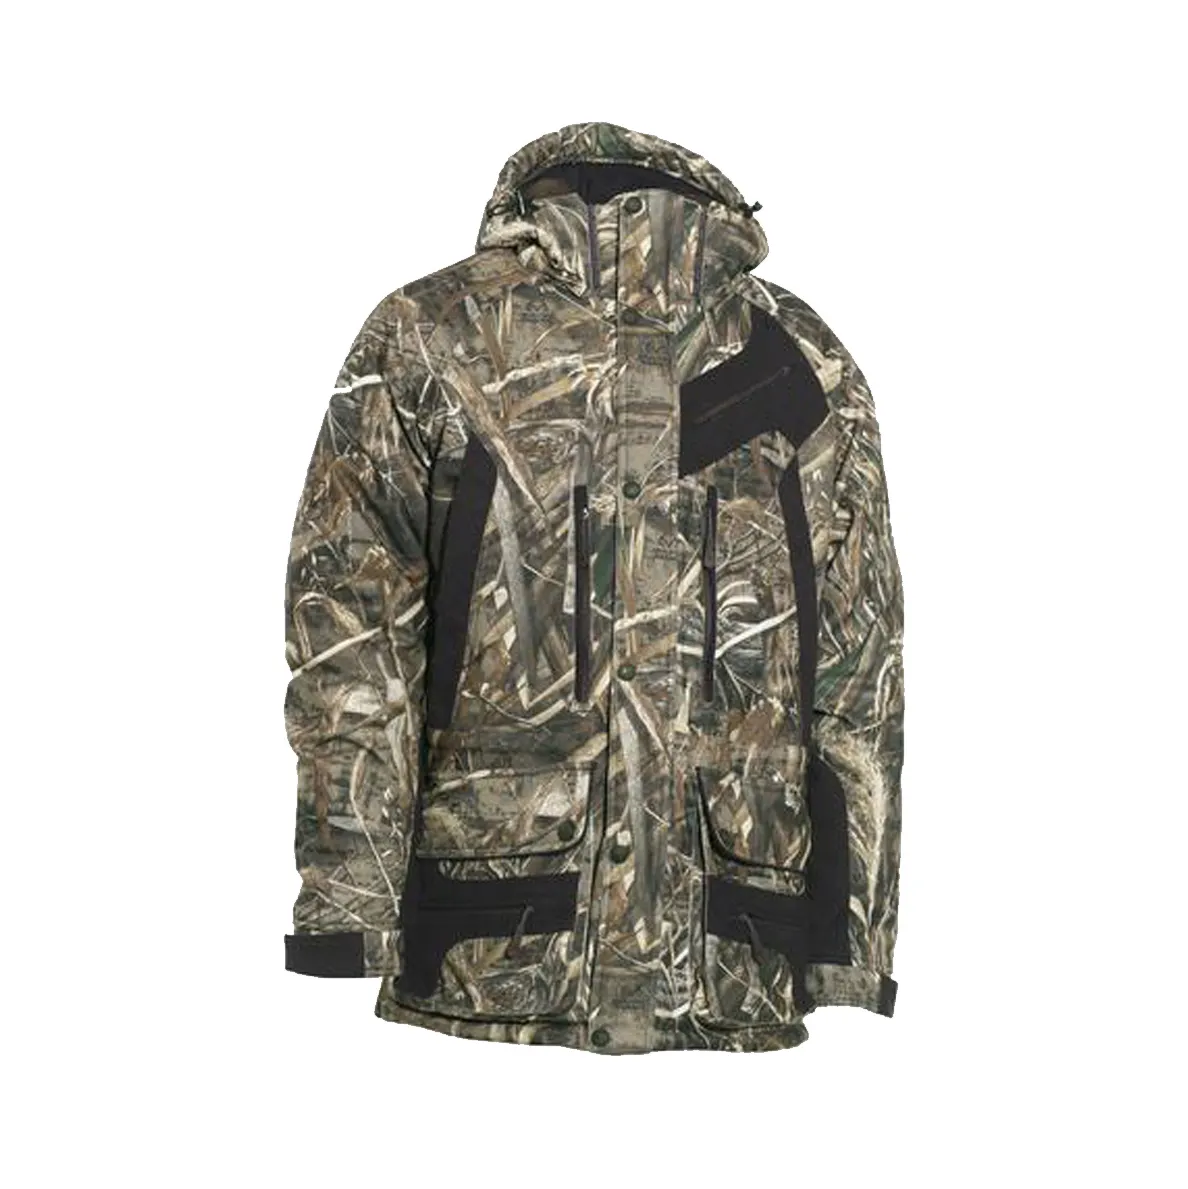 Wholesale Waterproof Camouflage Hunting jacket